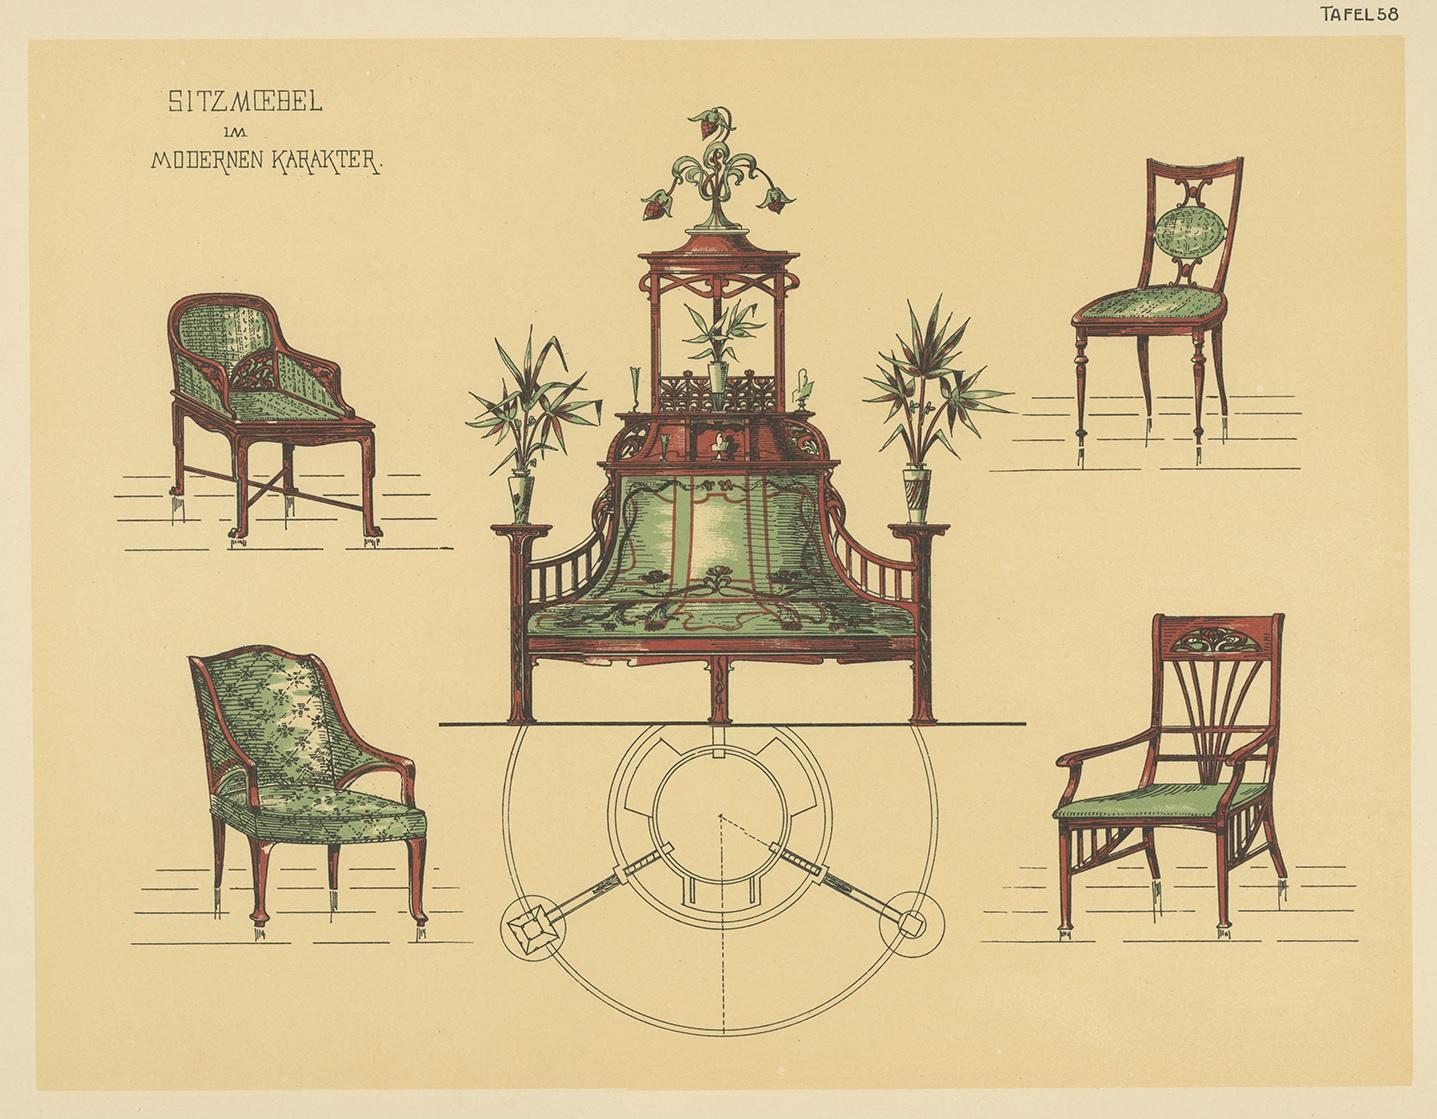 1910s furniture